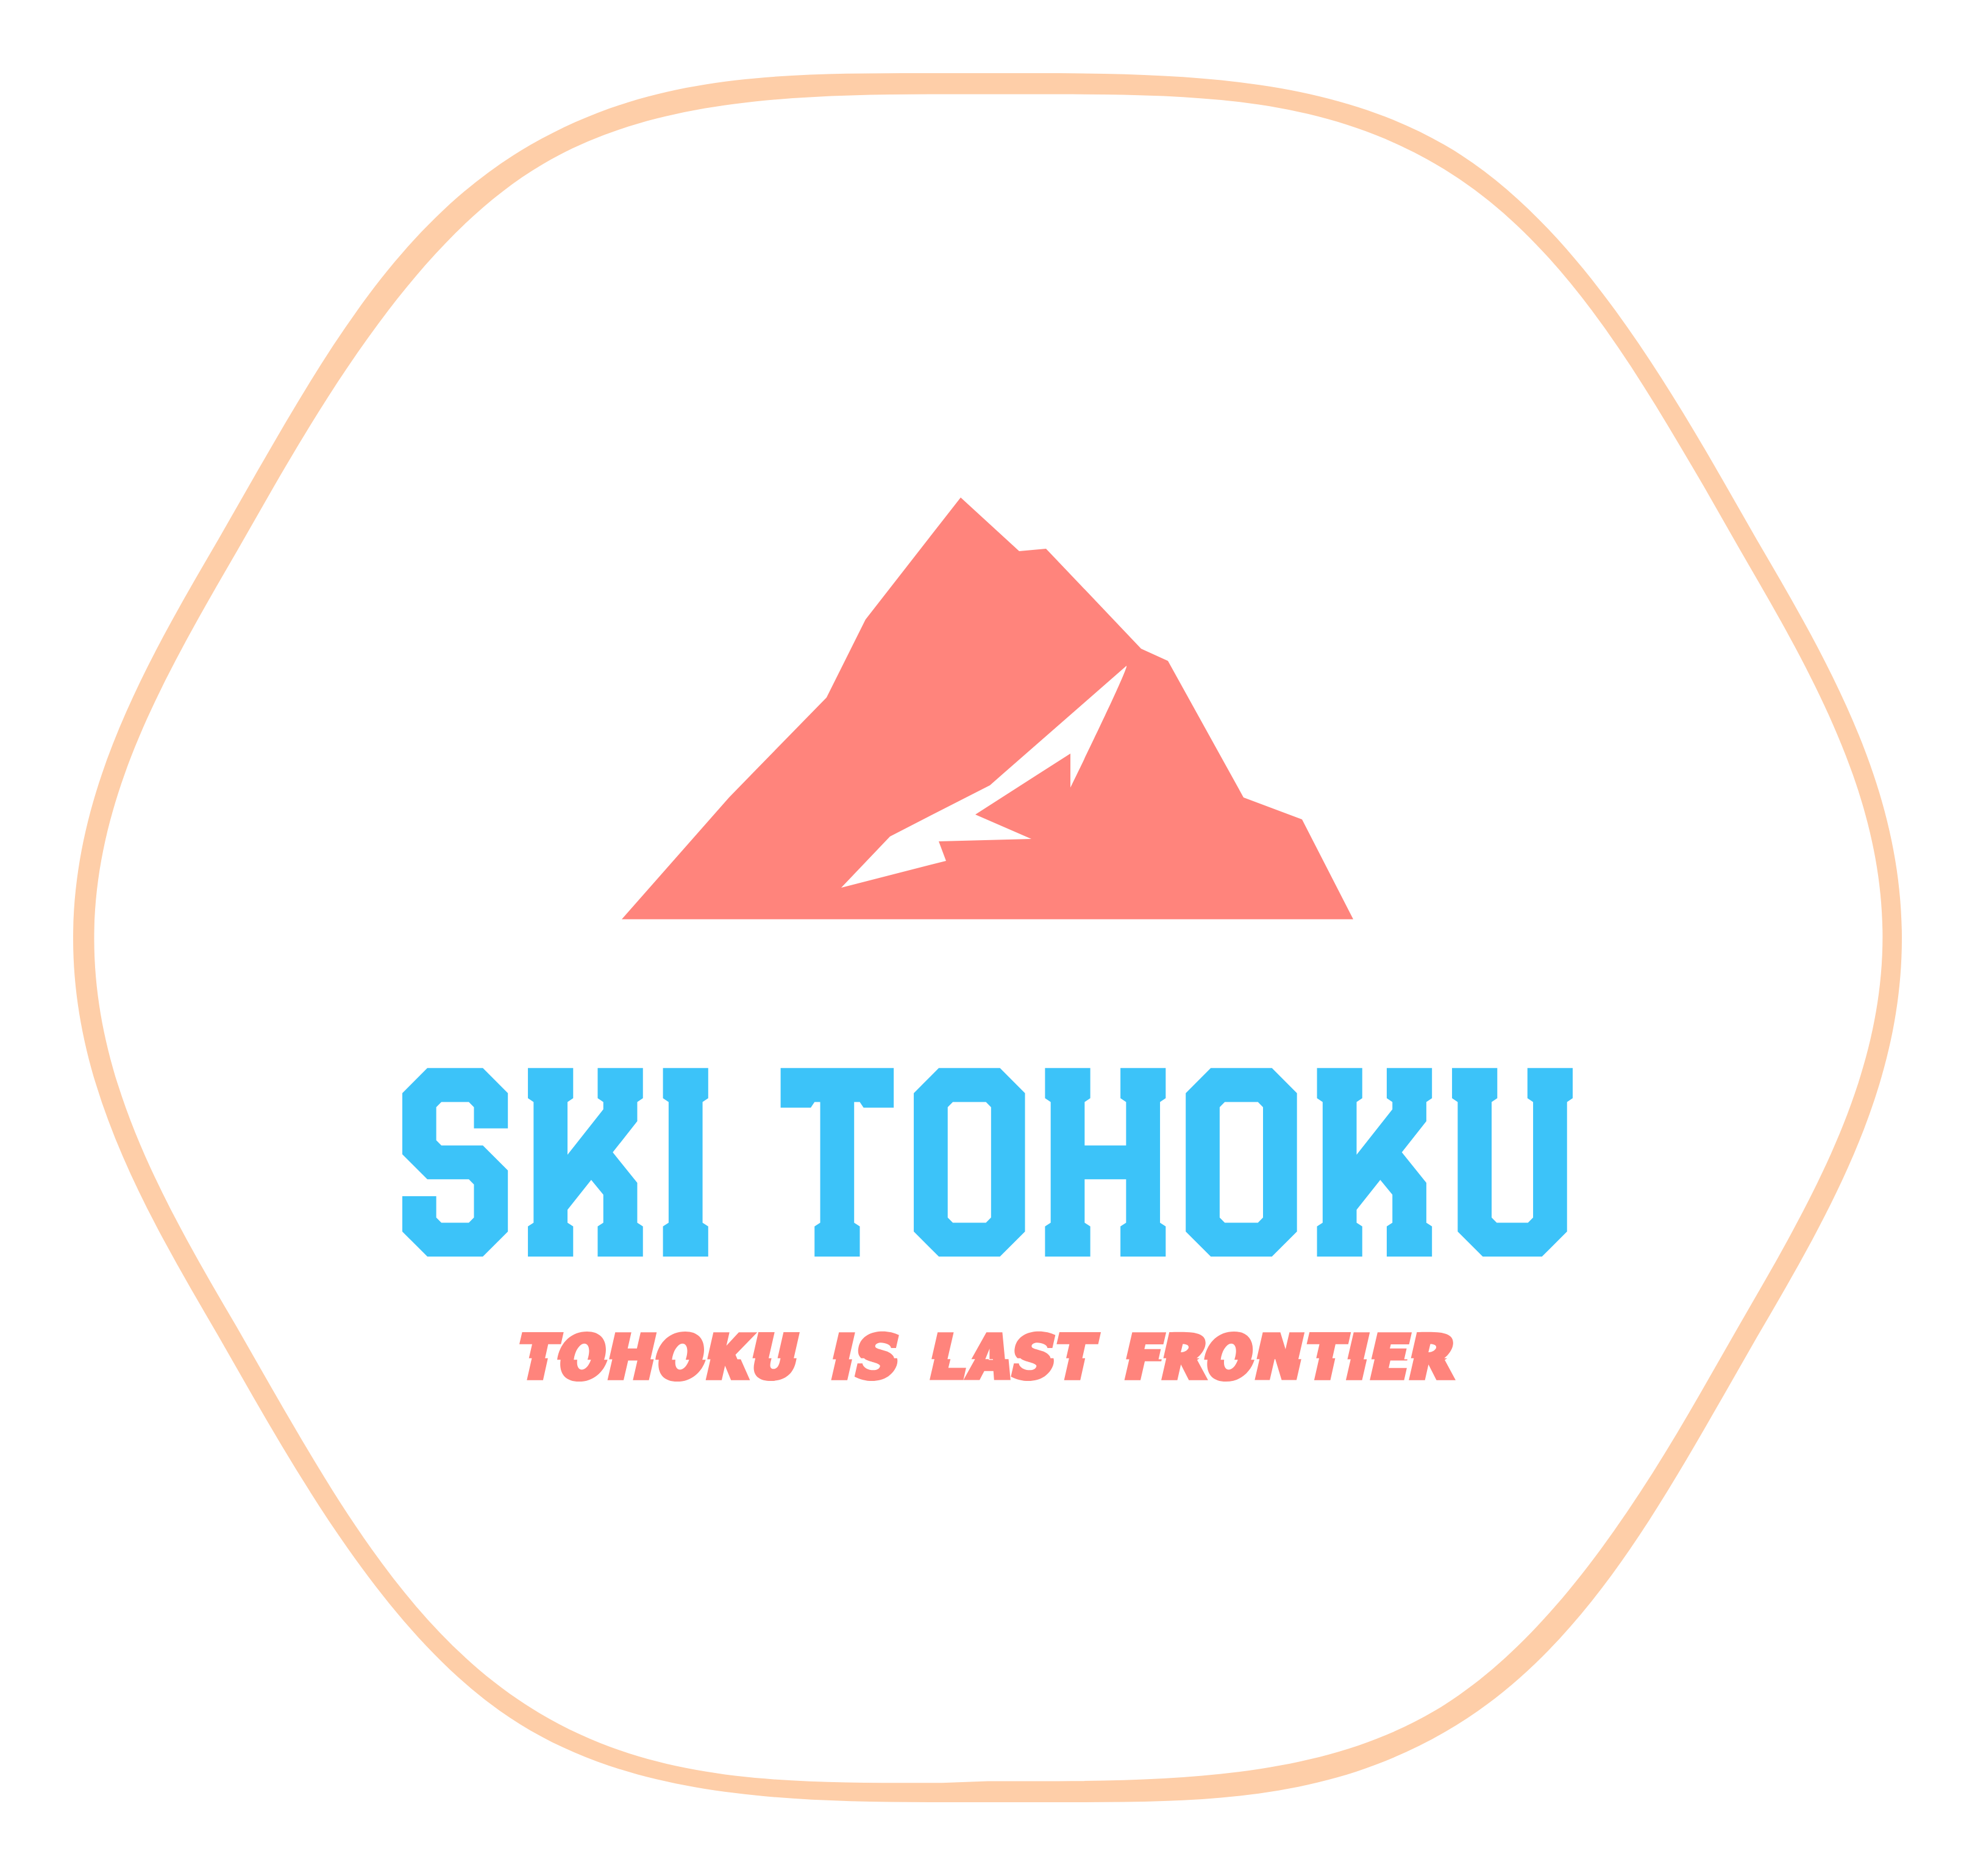 Ski Tohoku